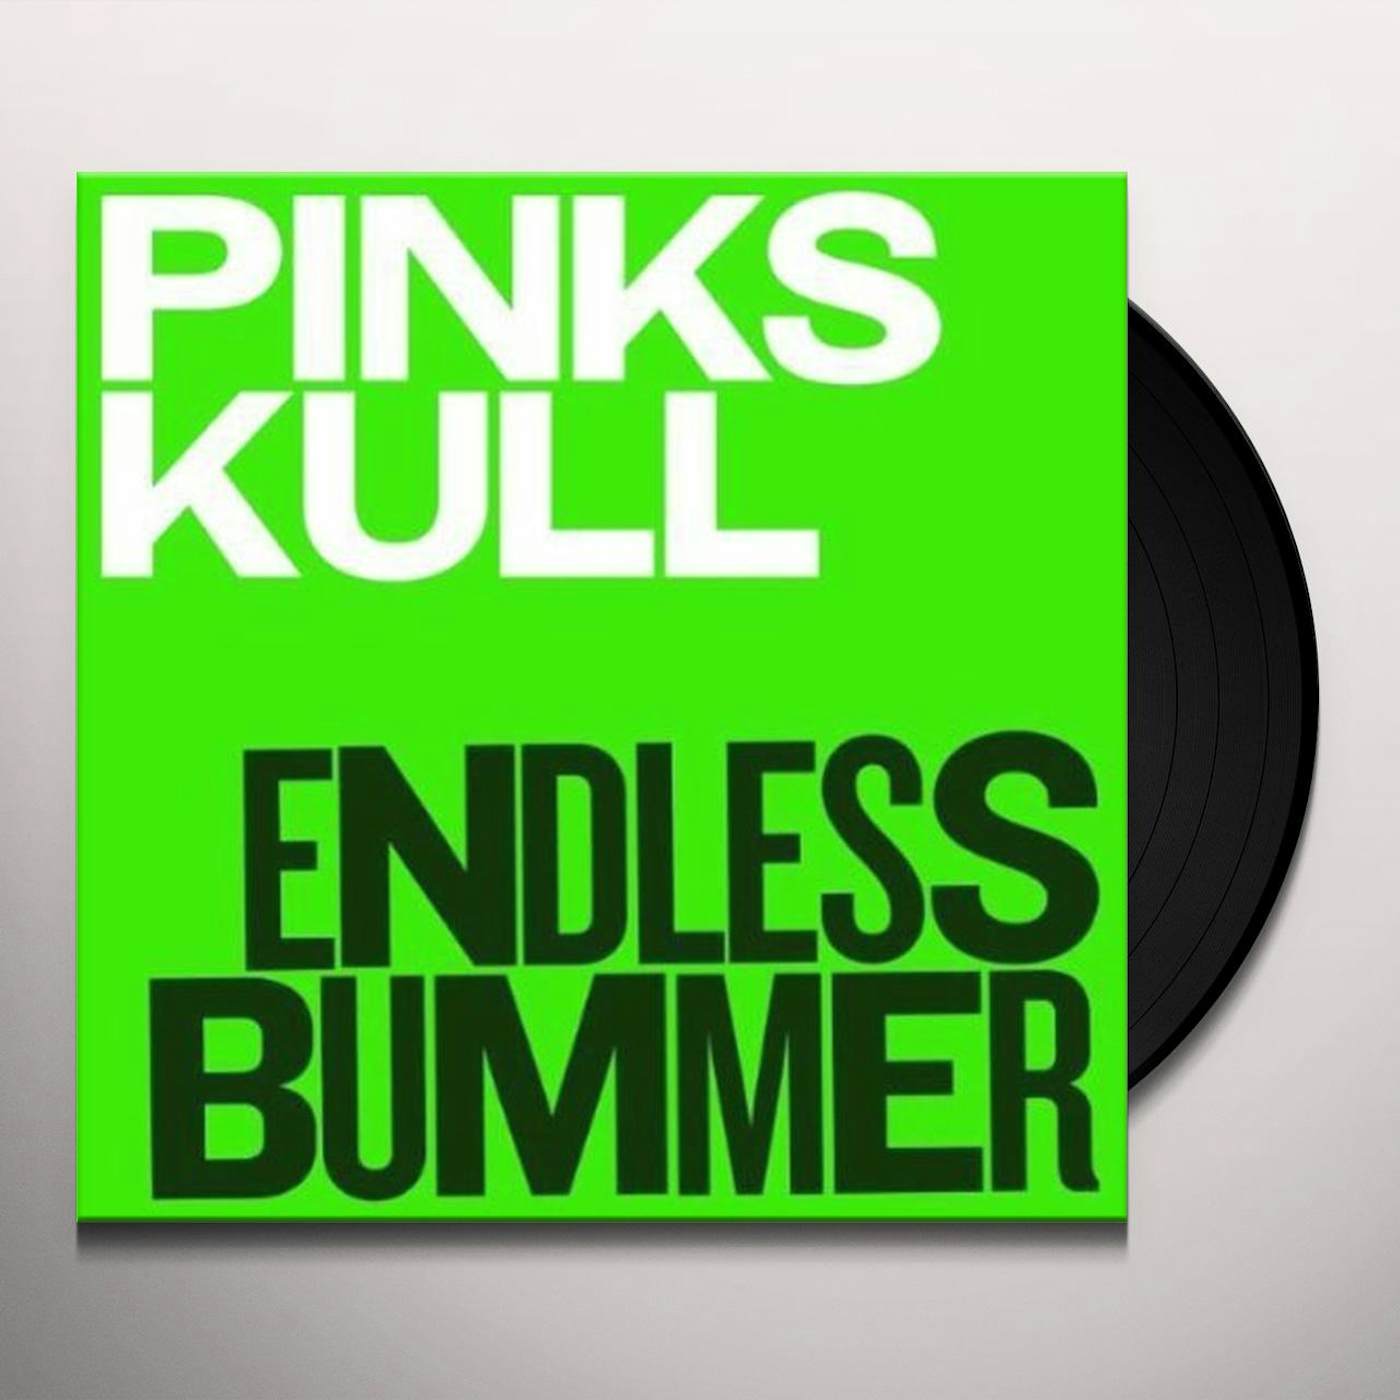 Pink Skull Endless Bummer Vinyl Record